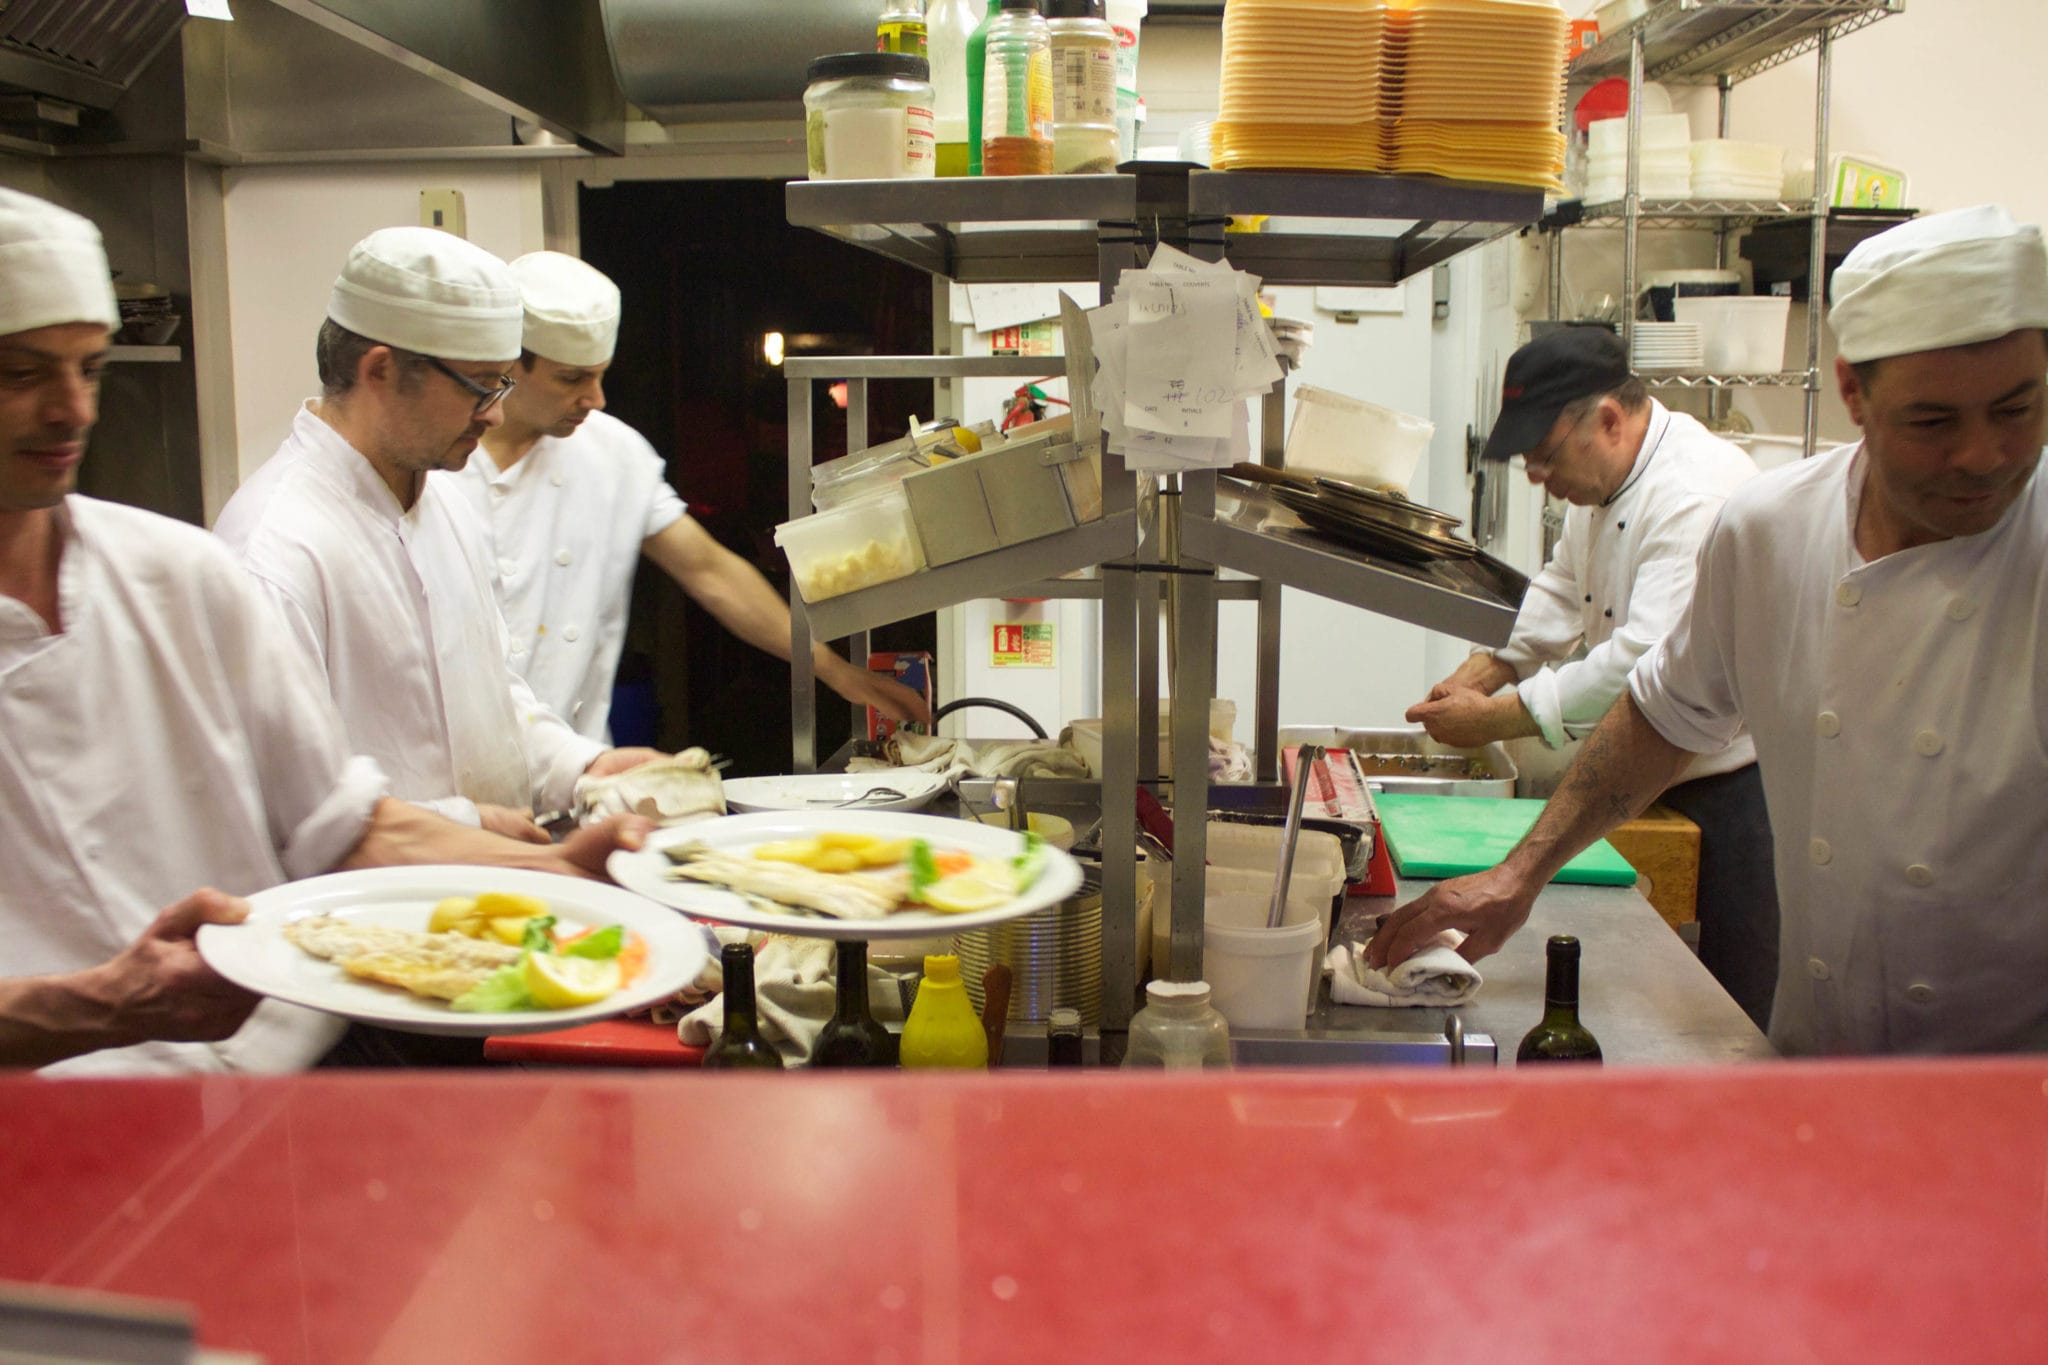 Chefs preparing food in kitchen